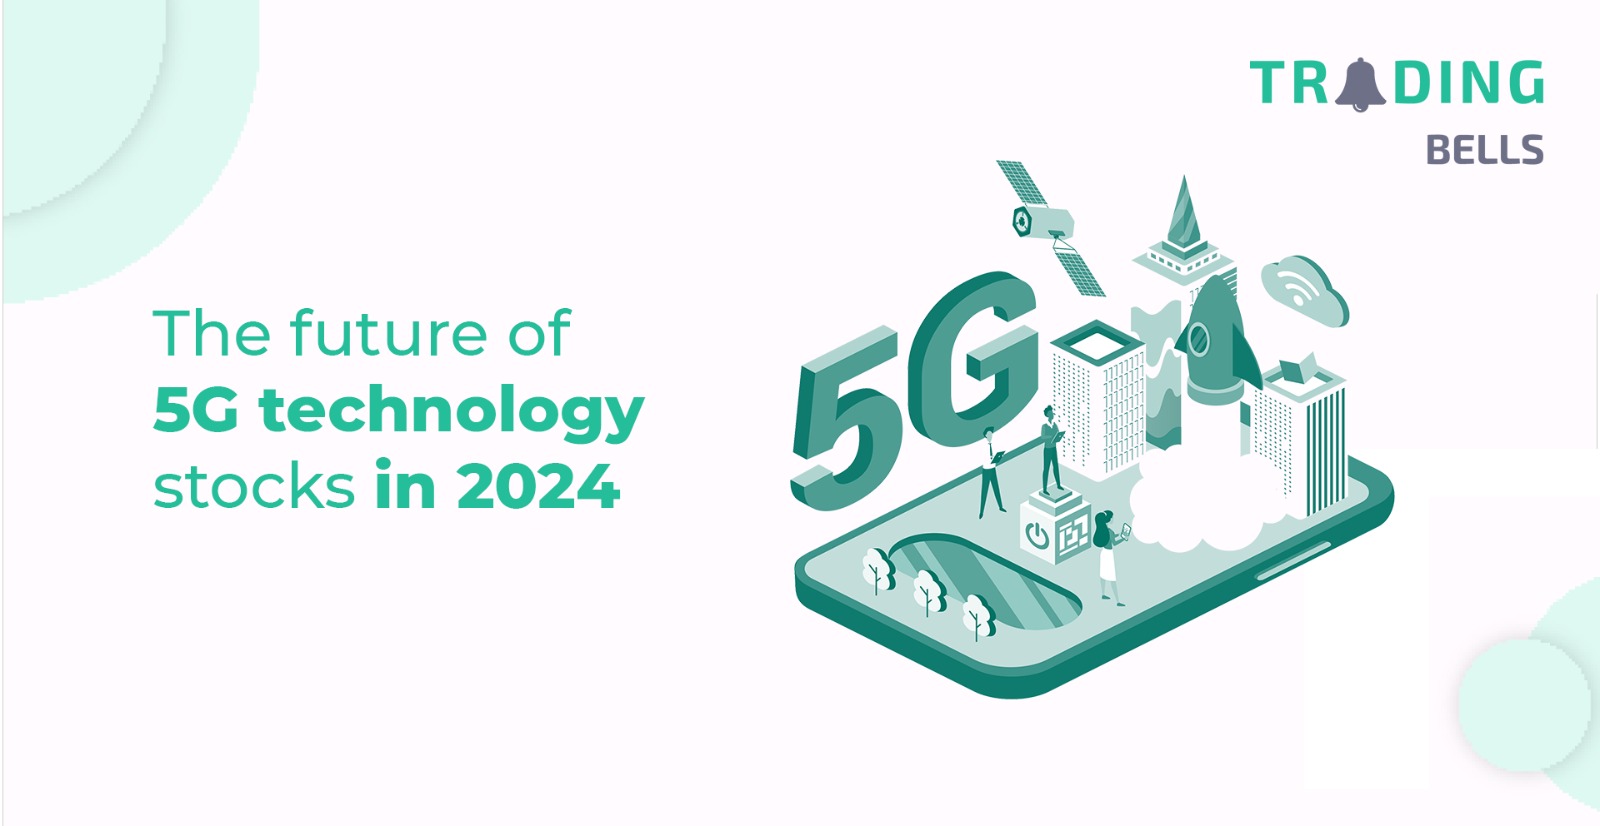 5G technology stocks in 2024